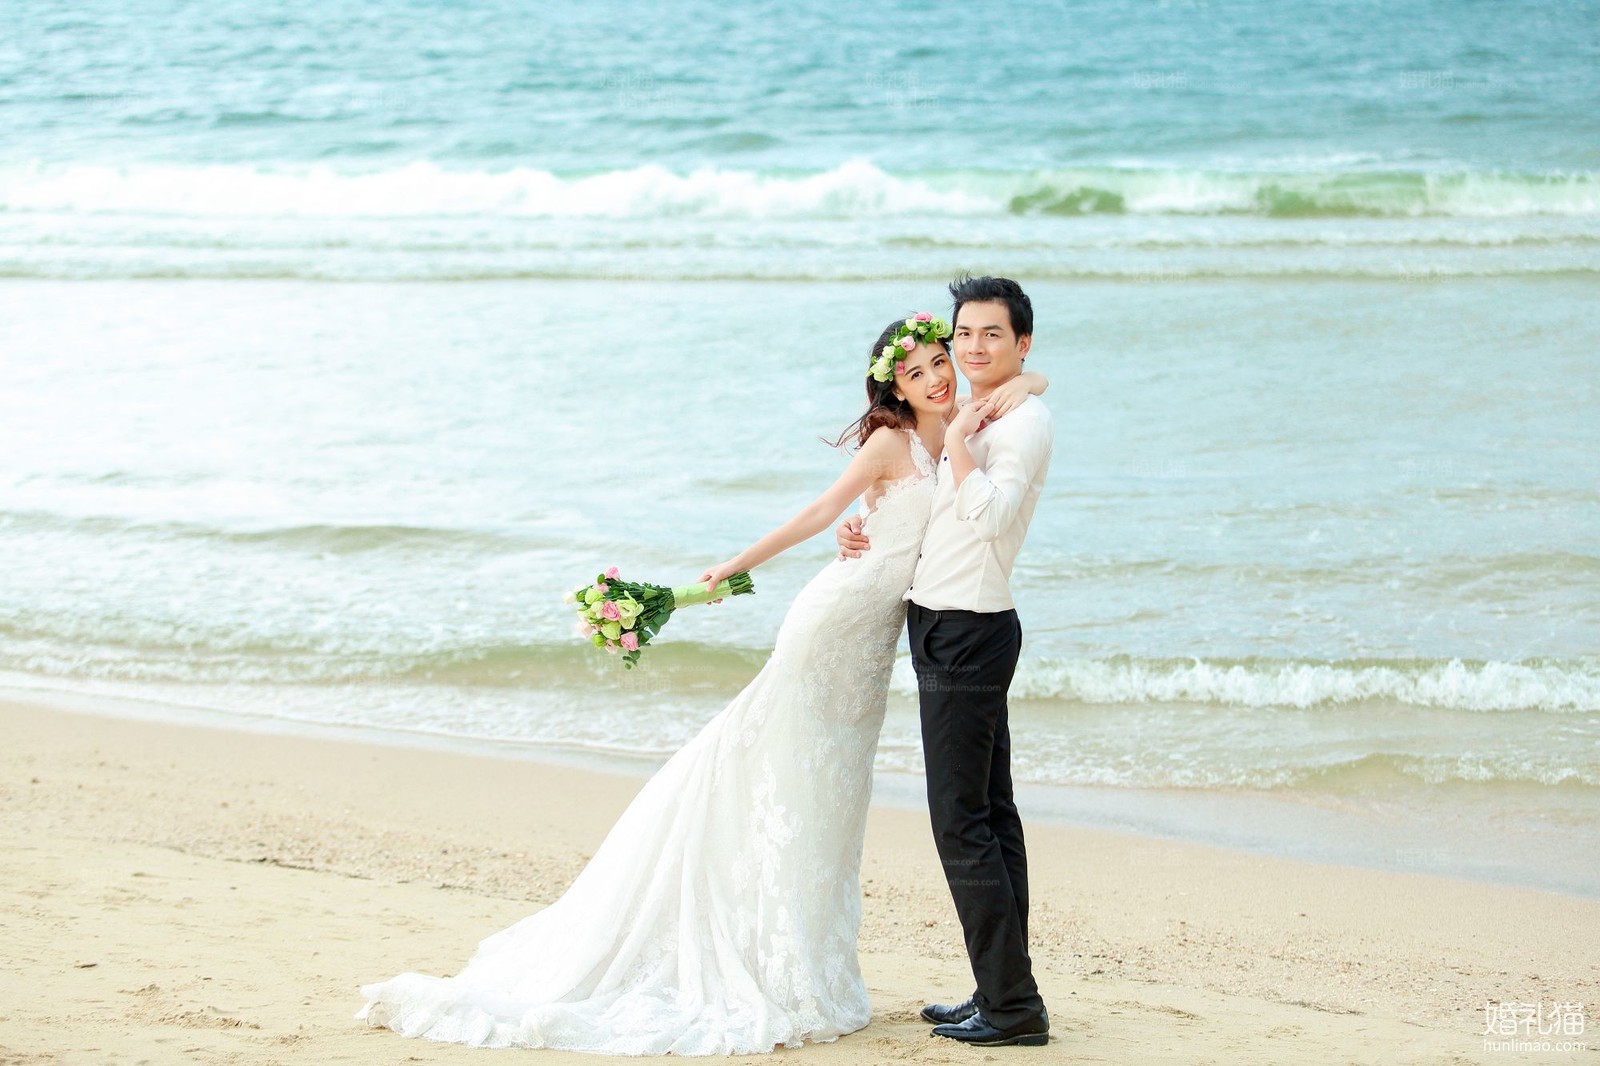 自然清新婚纱照|沙滩婚纱照图片,[自然清新, 沙滩],深圳婚纱照,婚纱照图片